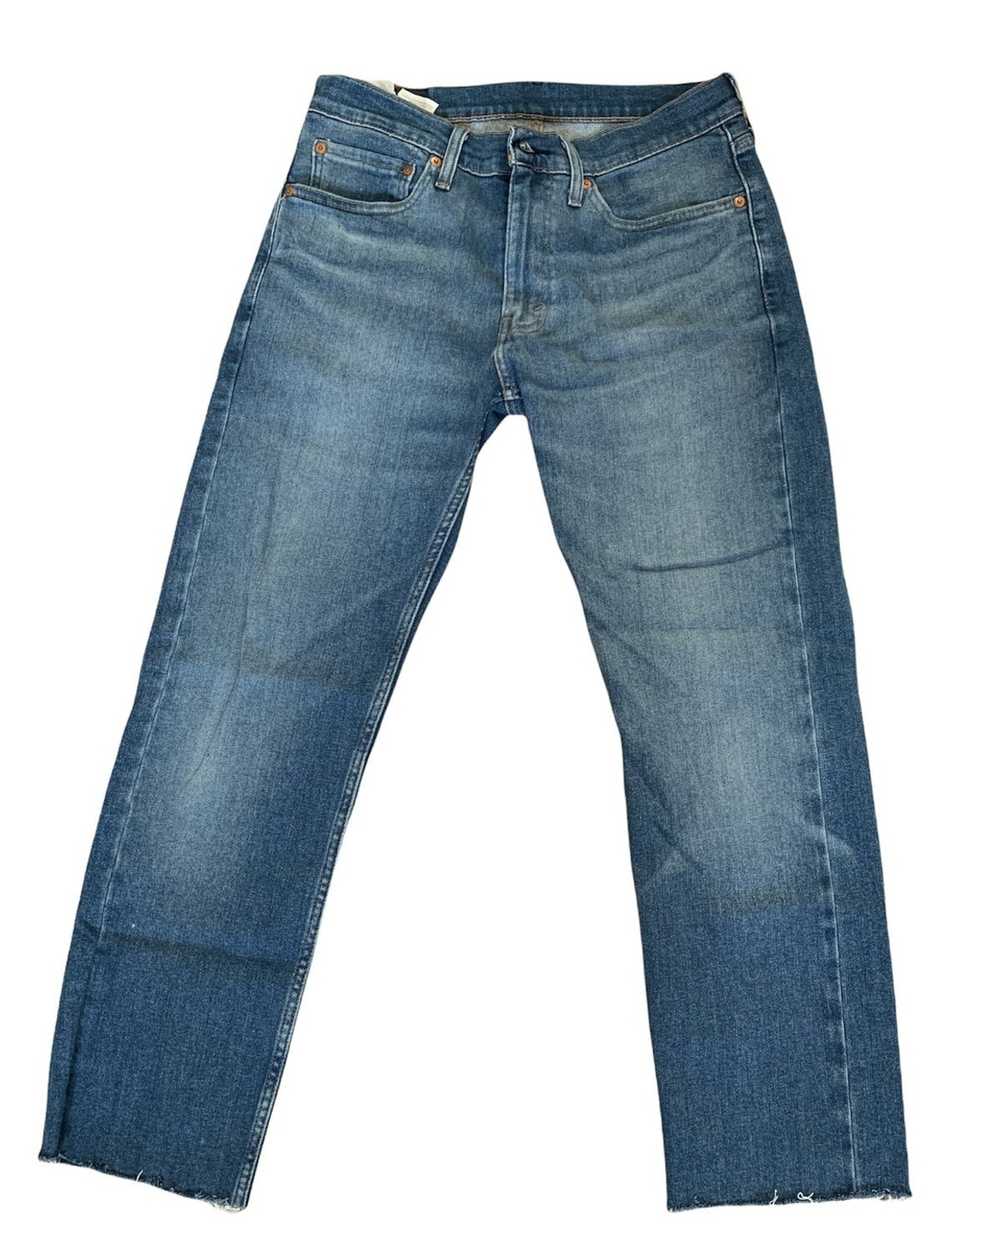 Levi's Levi’s Blue Jeans - image 1